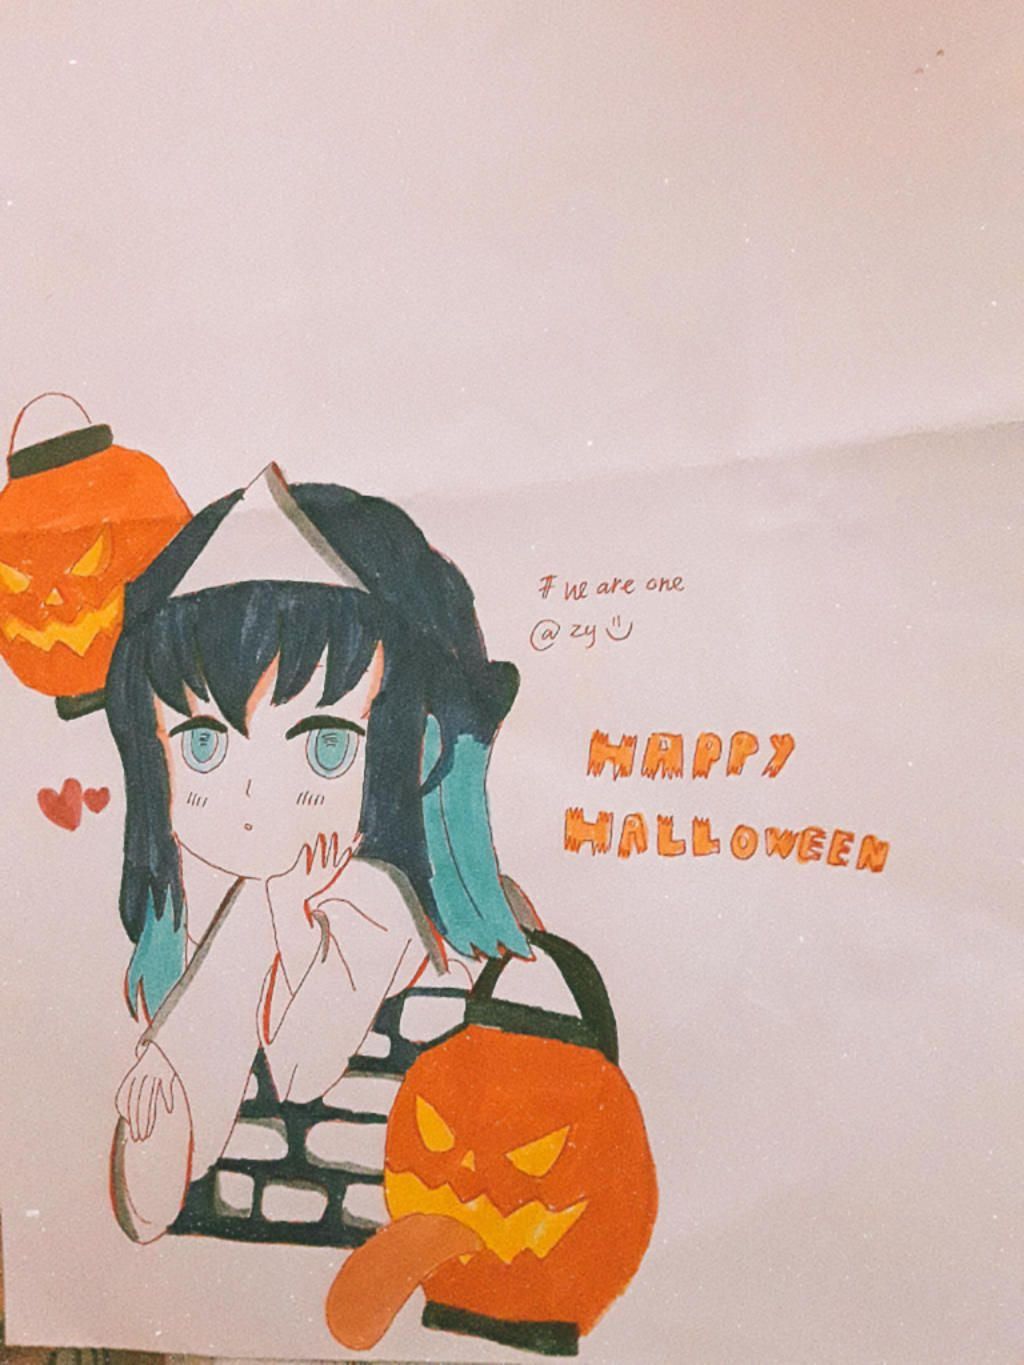 ái chà, Halloween lại sắp tới roài Vẽ anime/chibi Halloween đi nèo ...